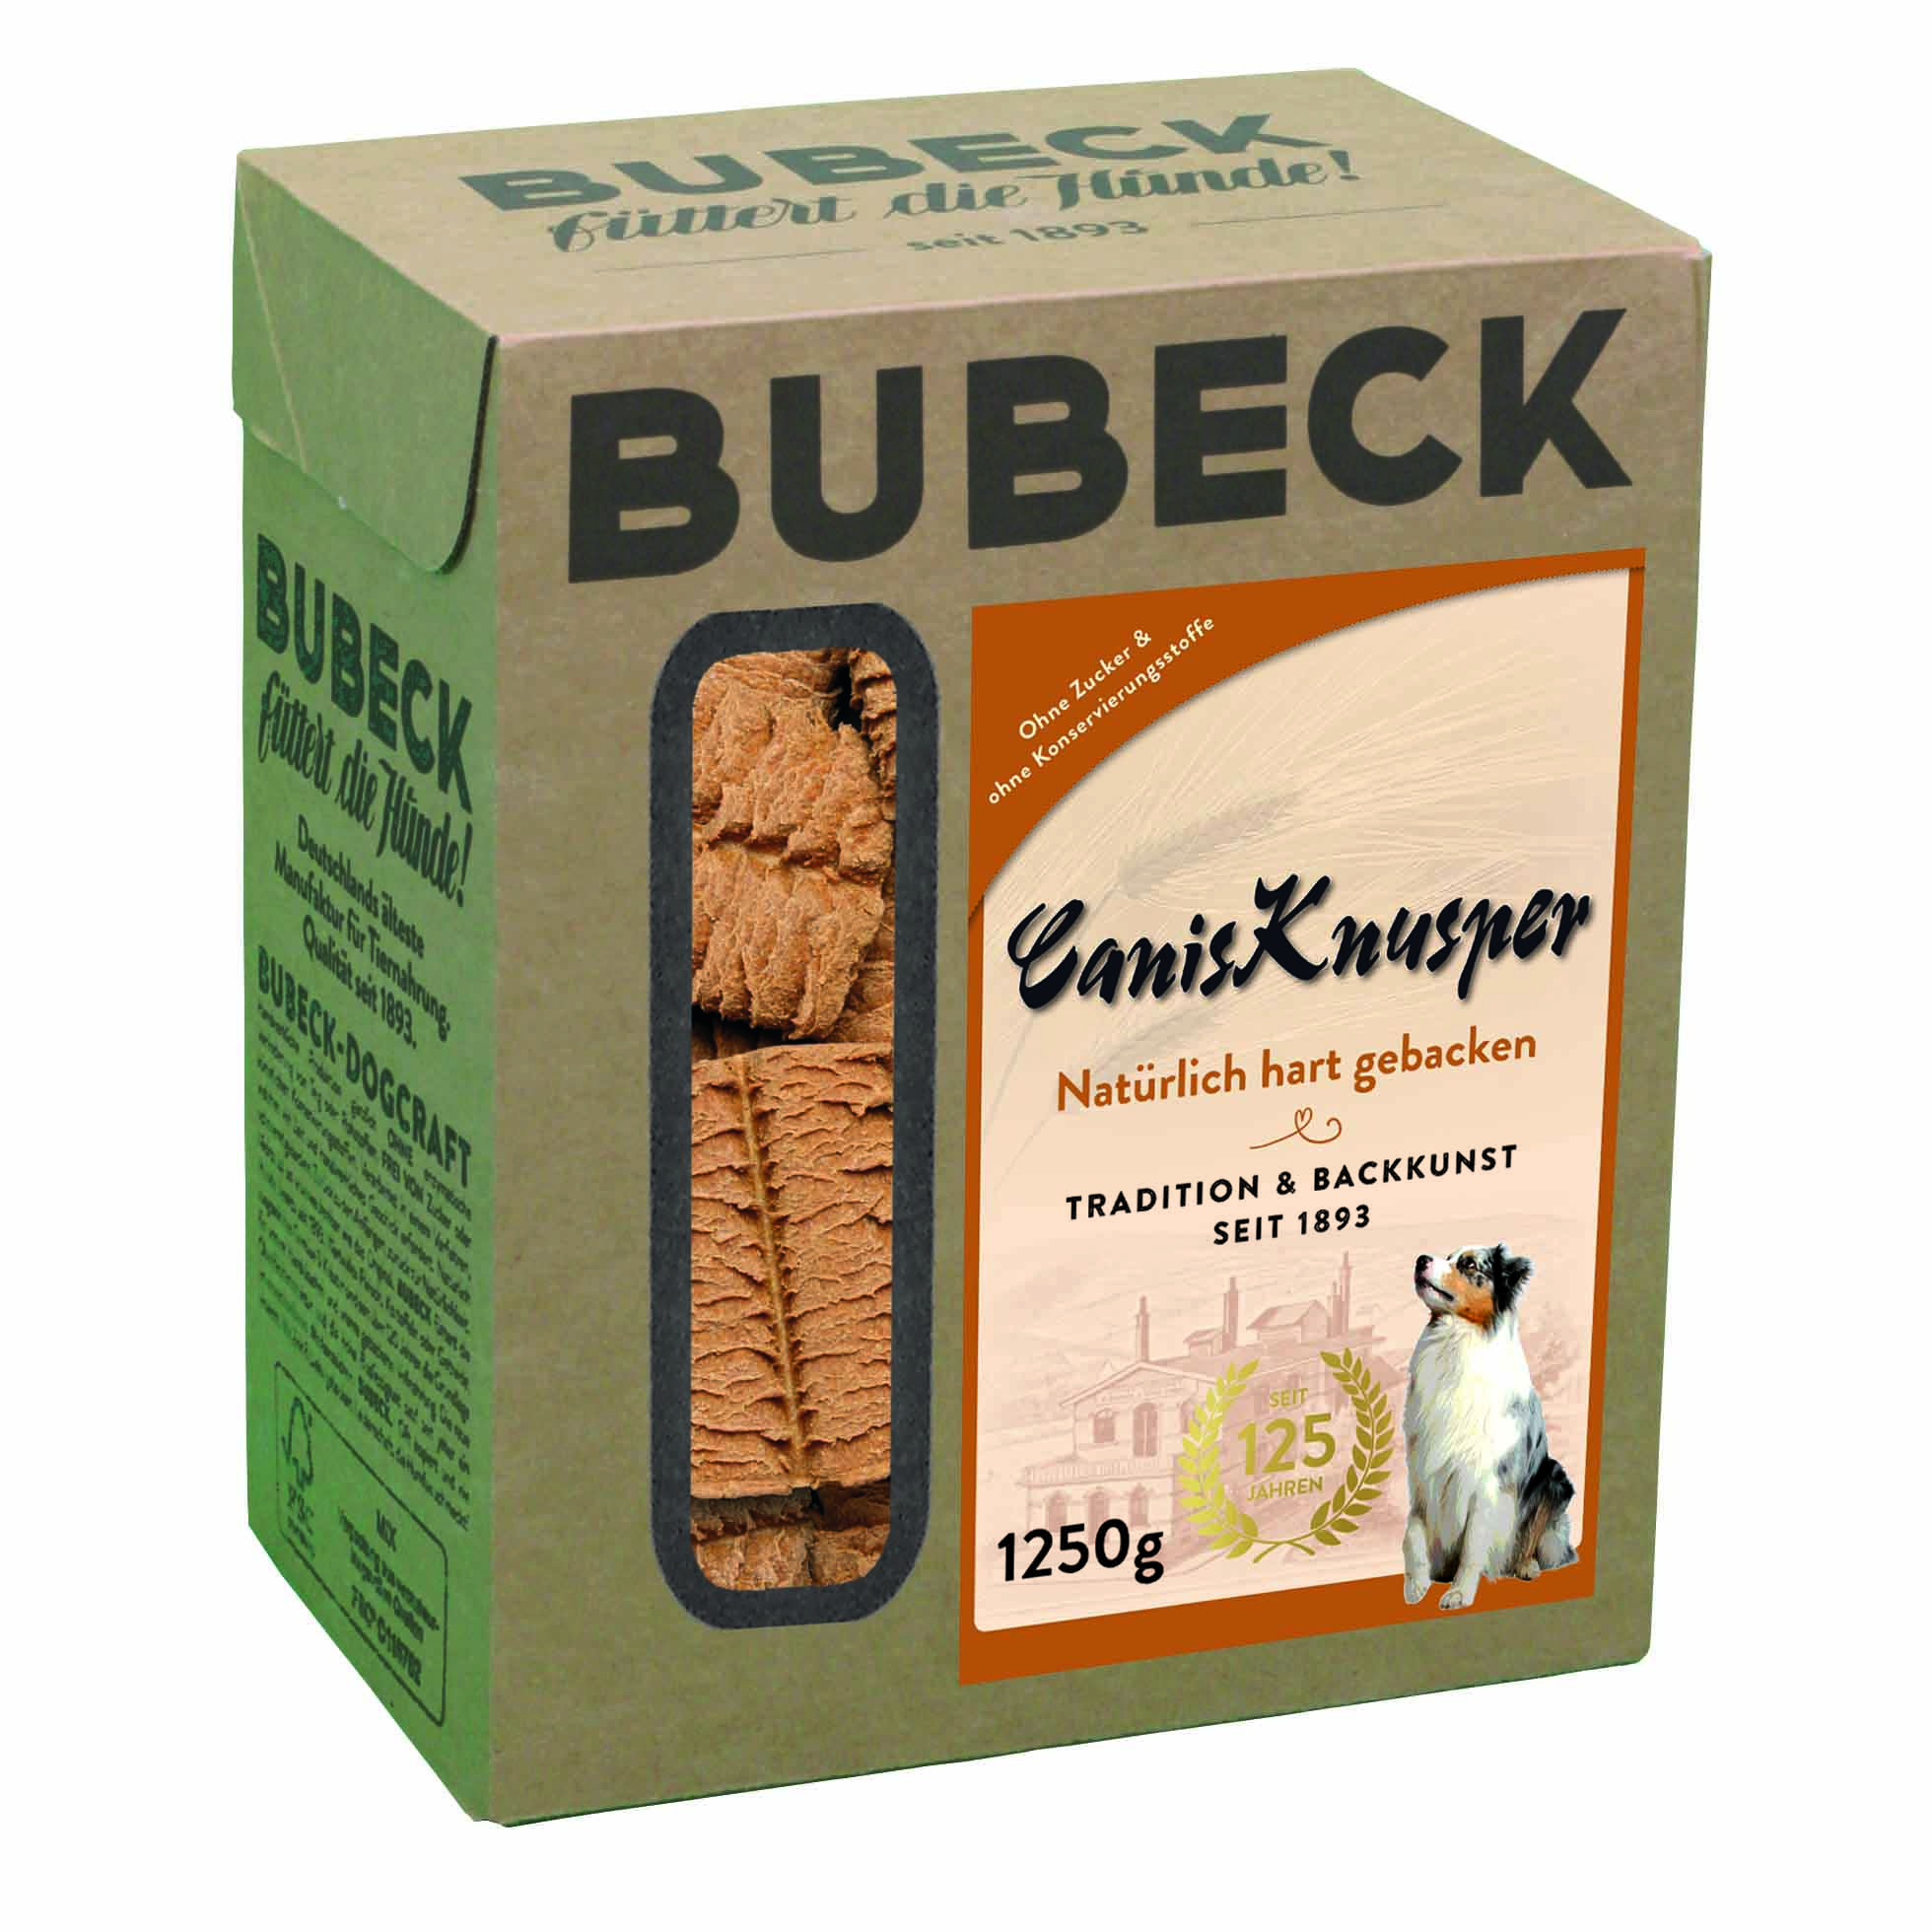 Bubeck, CanisKnusper, 1250g